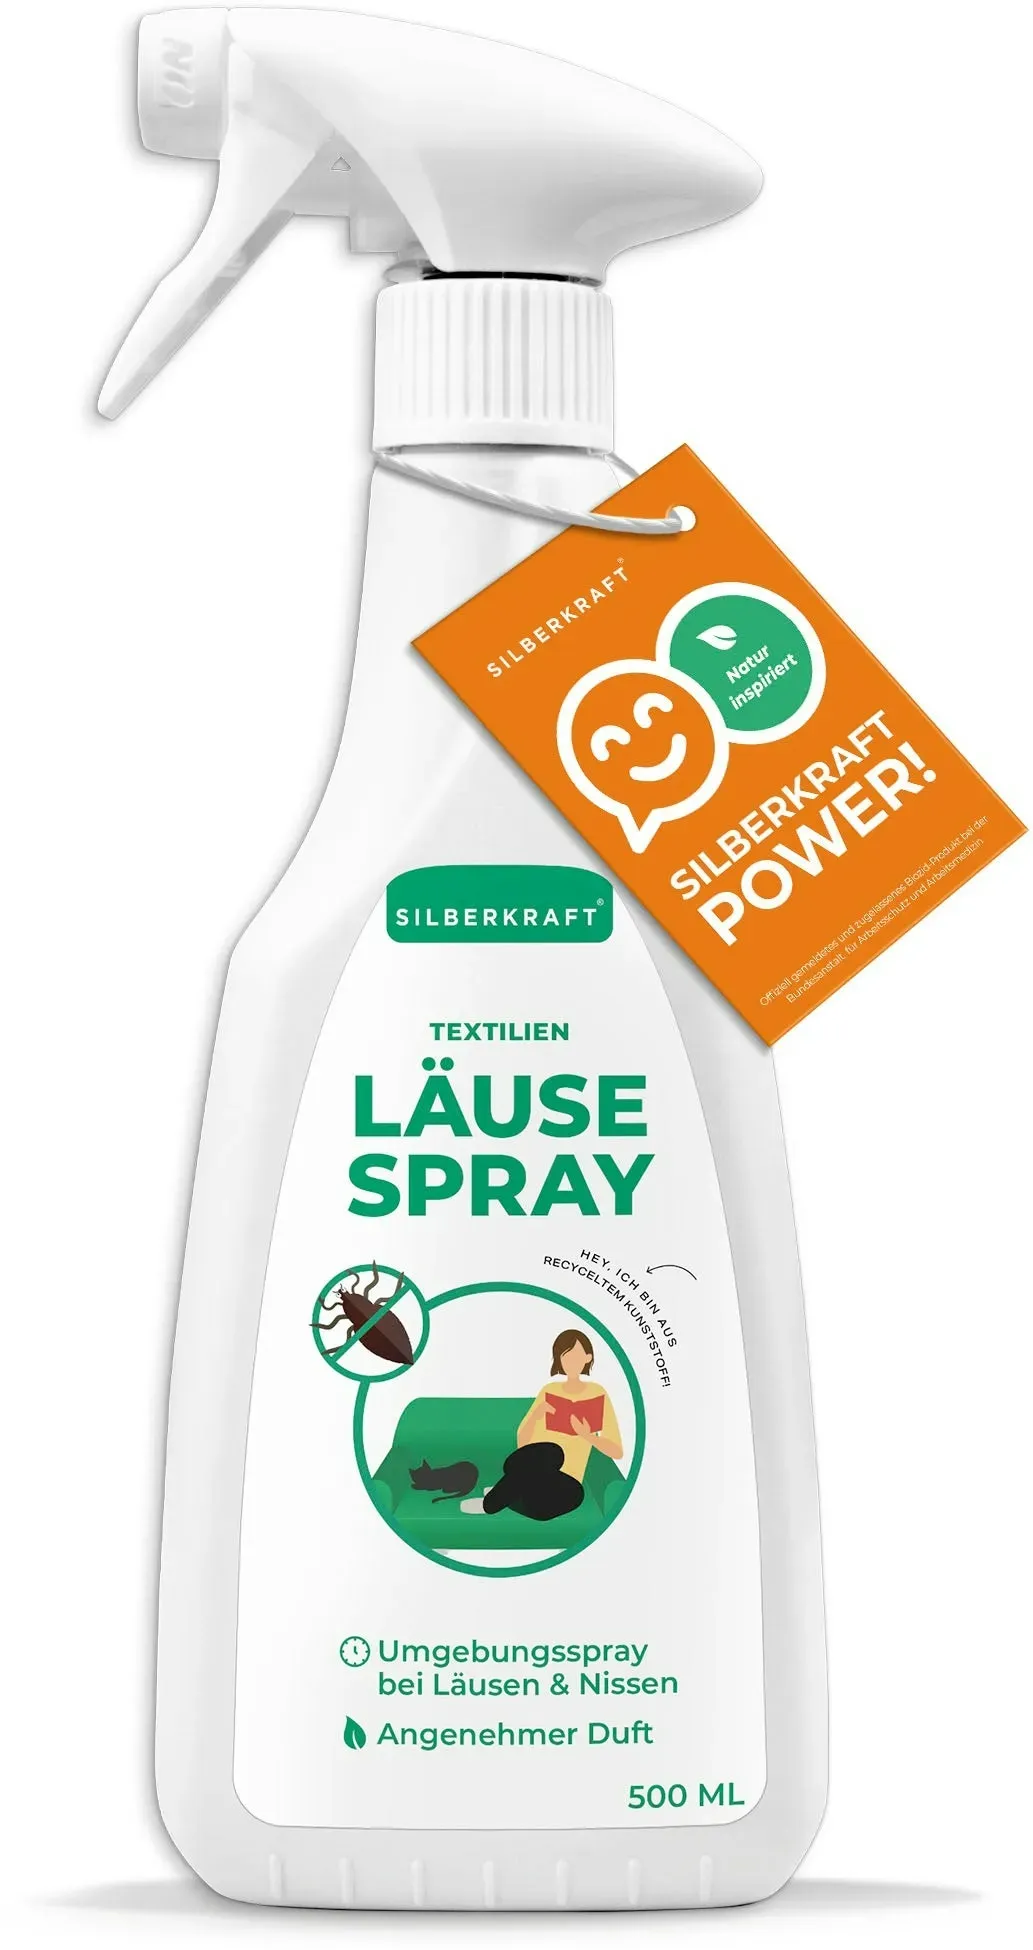 Läusespray für Textilien und Kopfläuse vorbeugen Spray: 500 ml